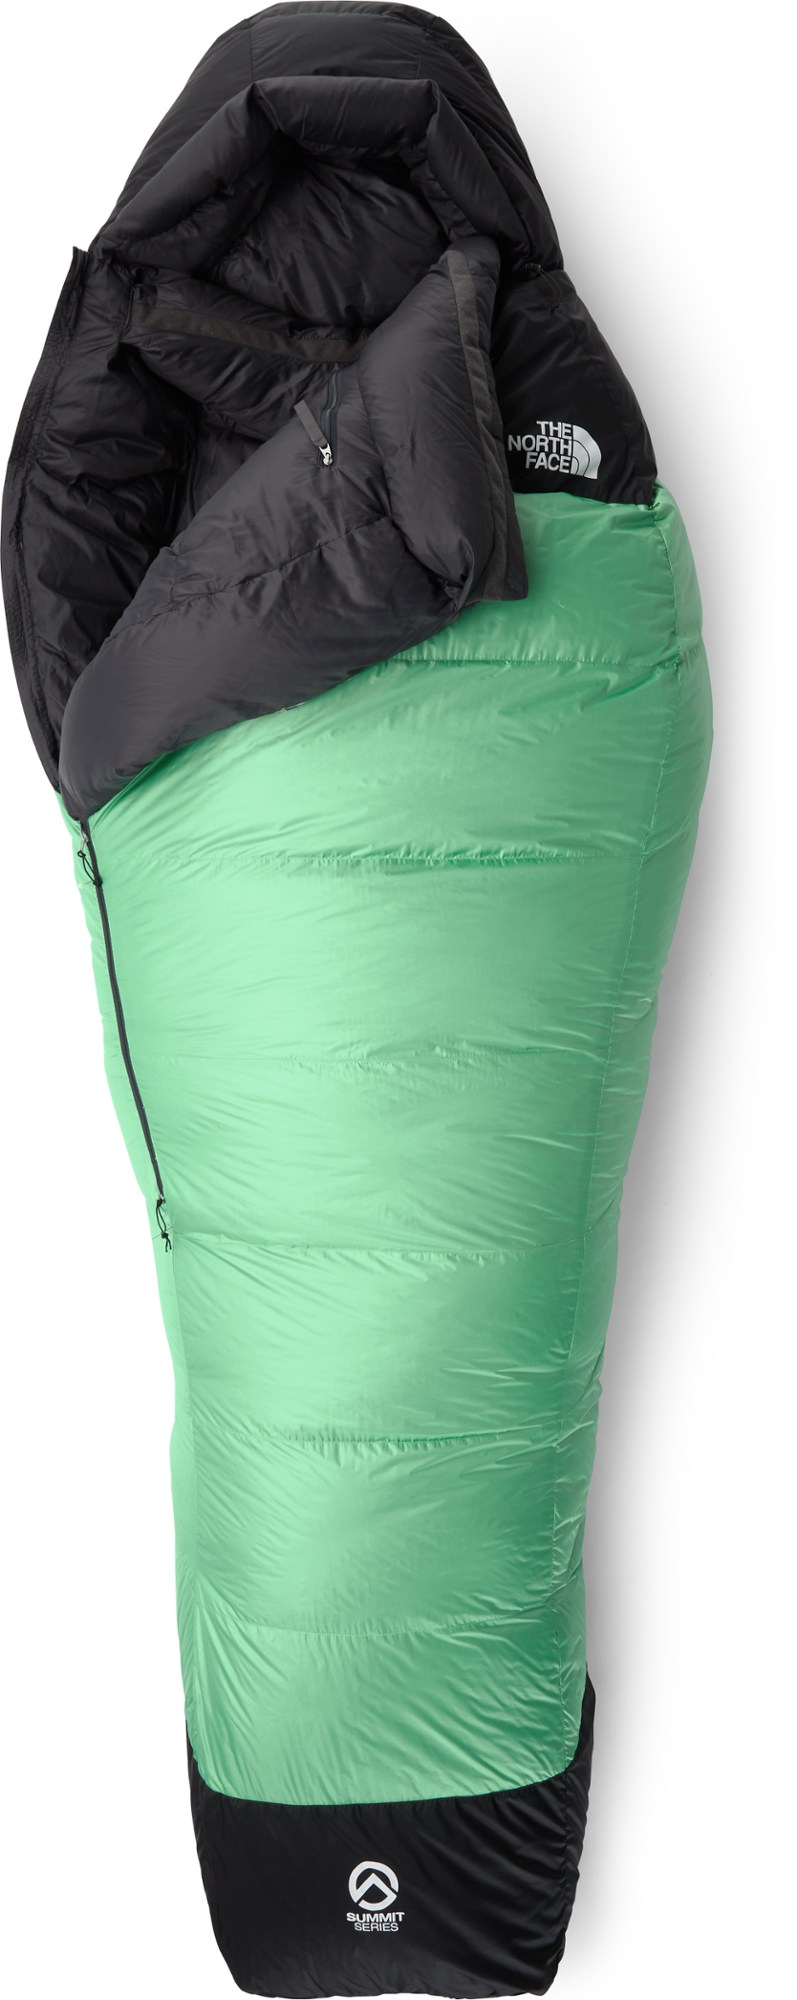 Спальный мешок Инферно 0 The North Face, зеленый